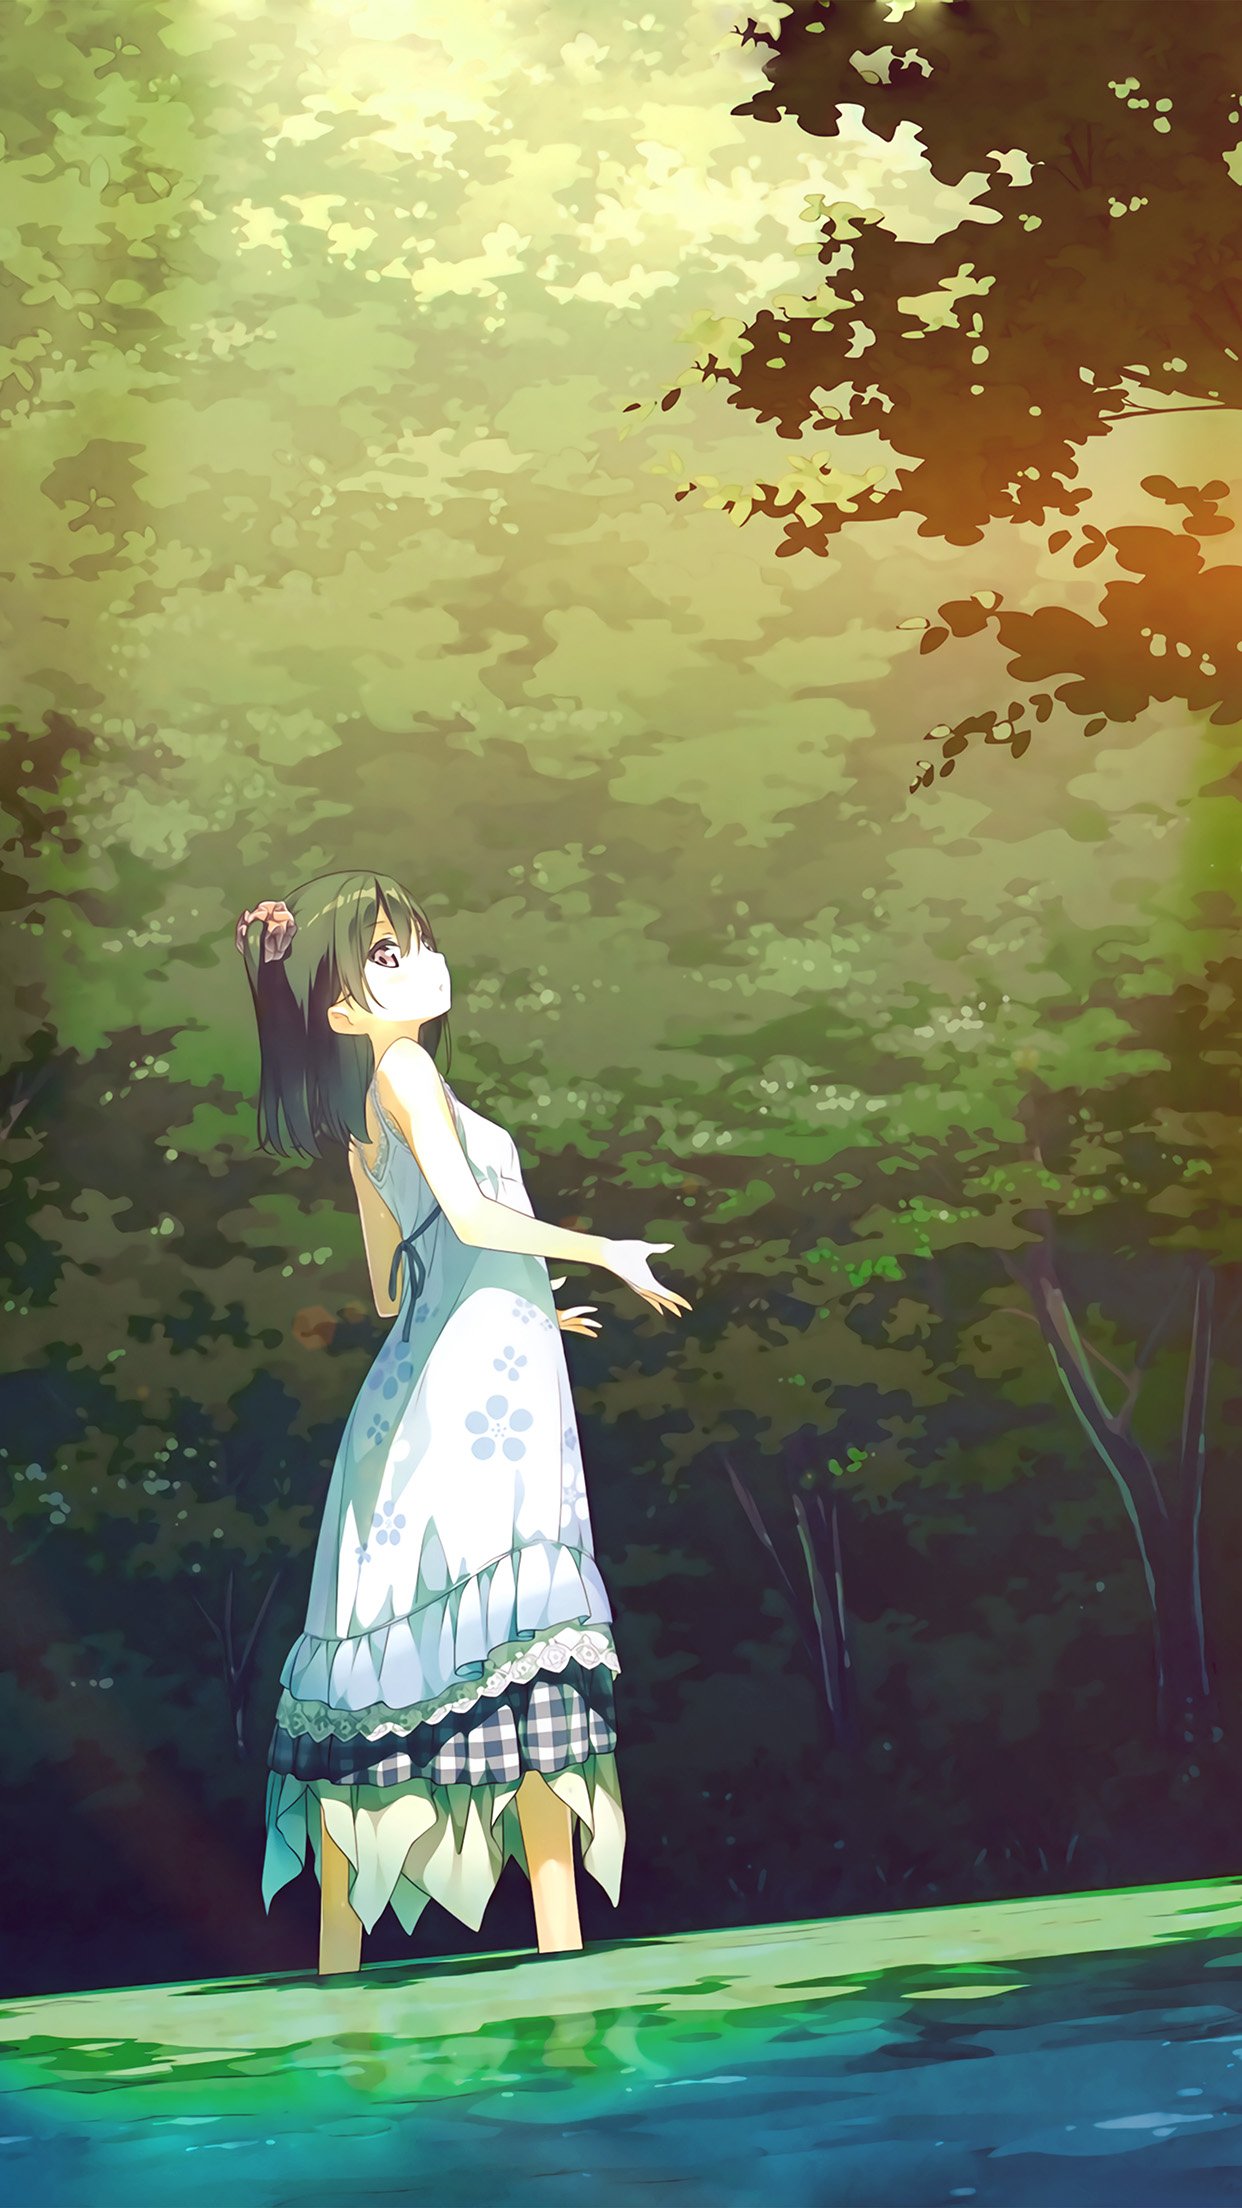 iPhone X wallpaper. anime girl green art illustration flare